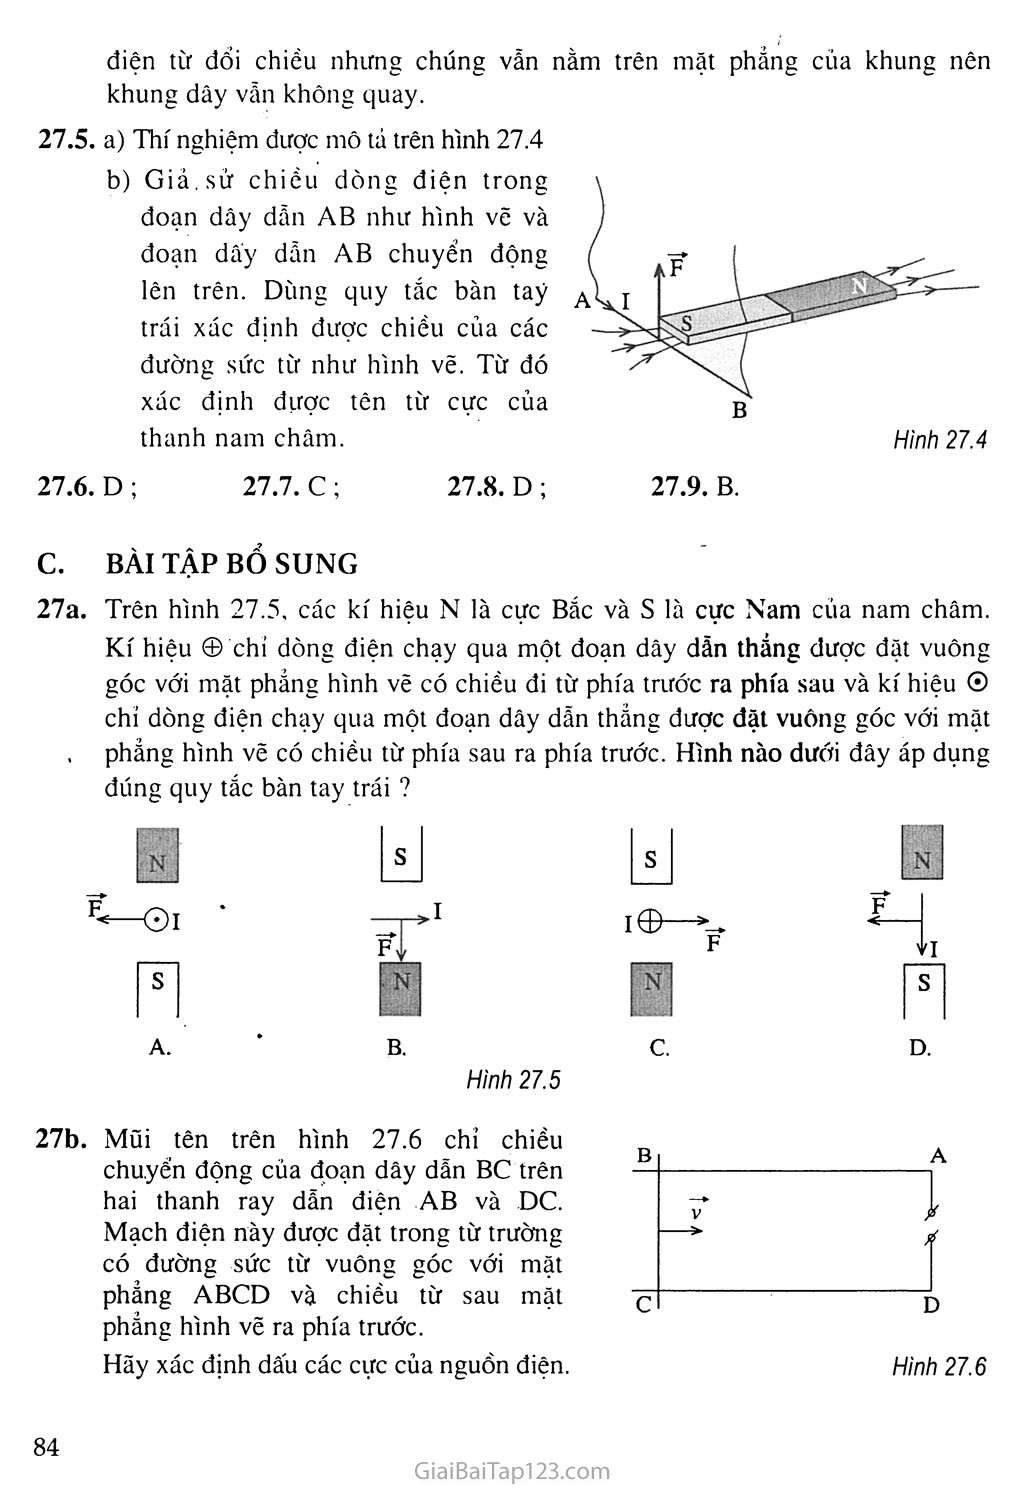 Bài 27: Lực điện từ trang 3